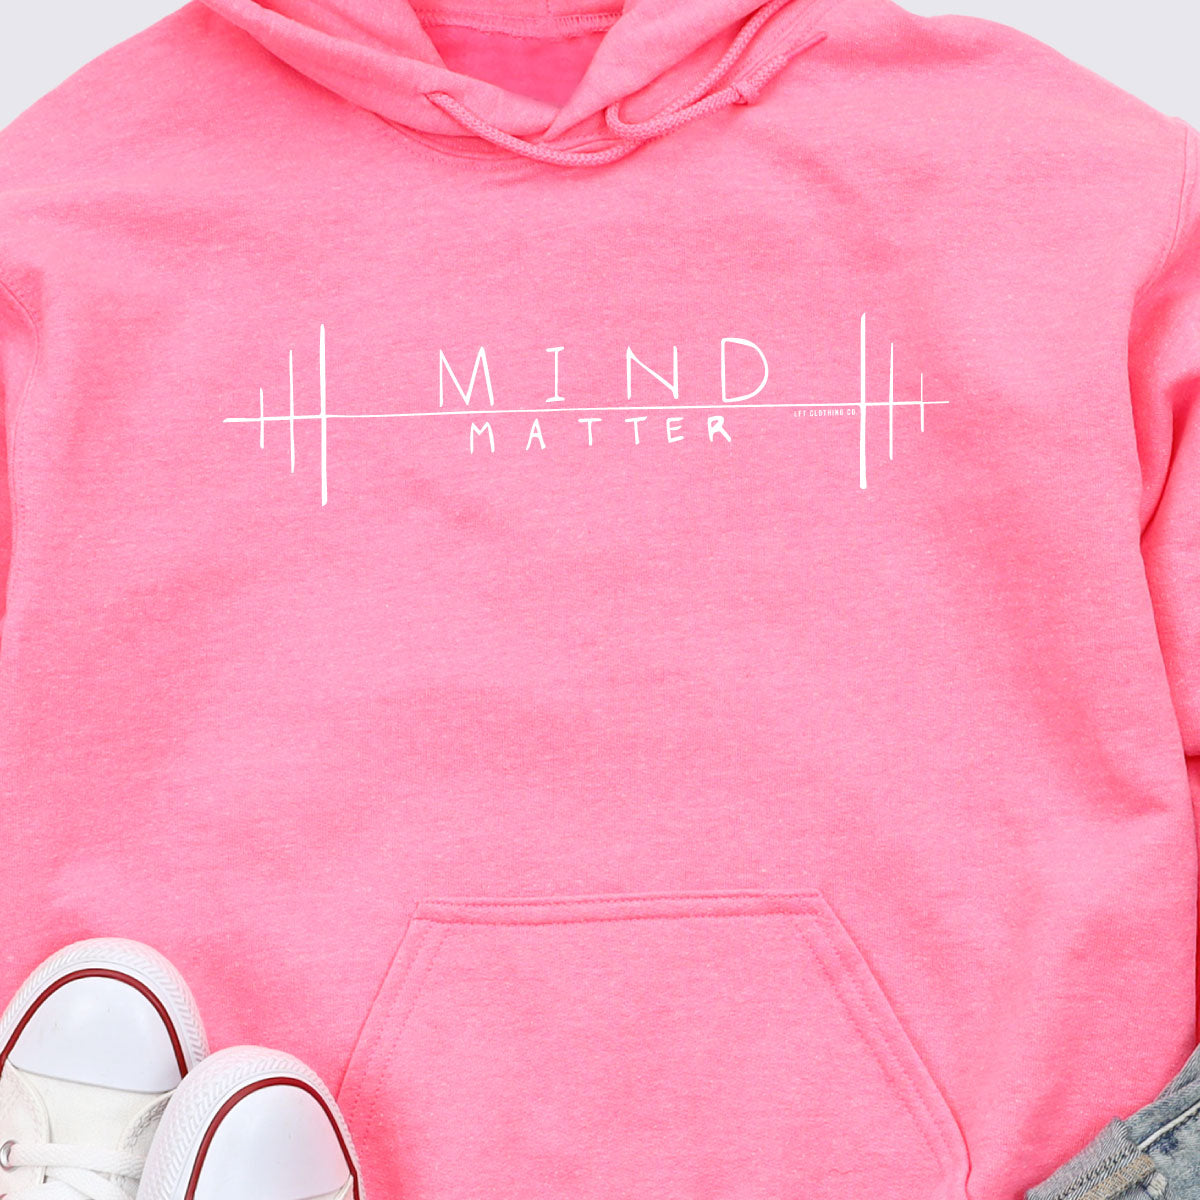 Mind Over Matter Doodle Core Fleece Pullover Hooded Sweatshirt